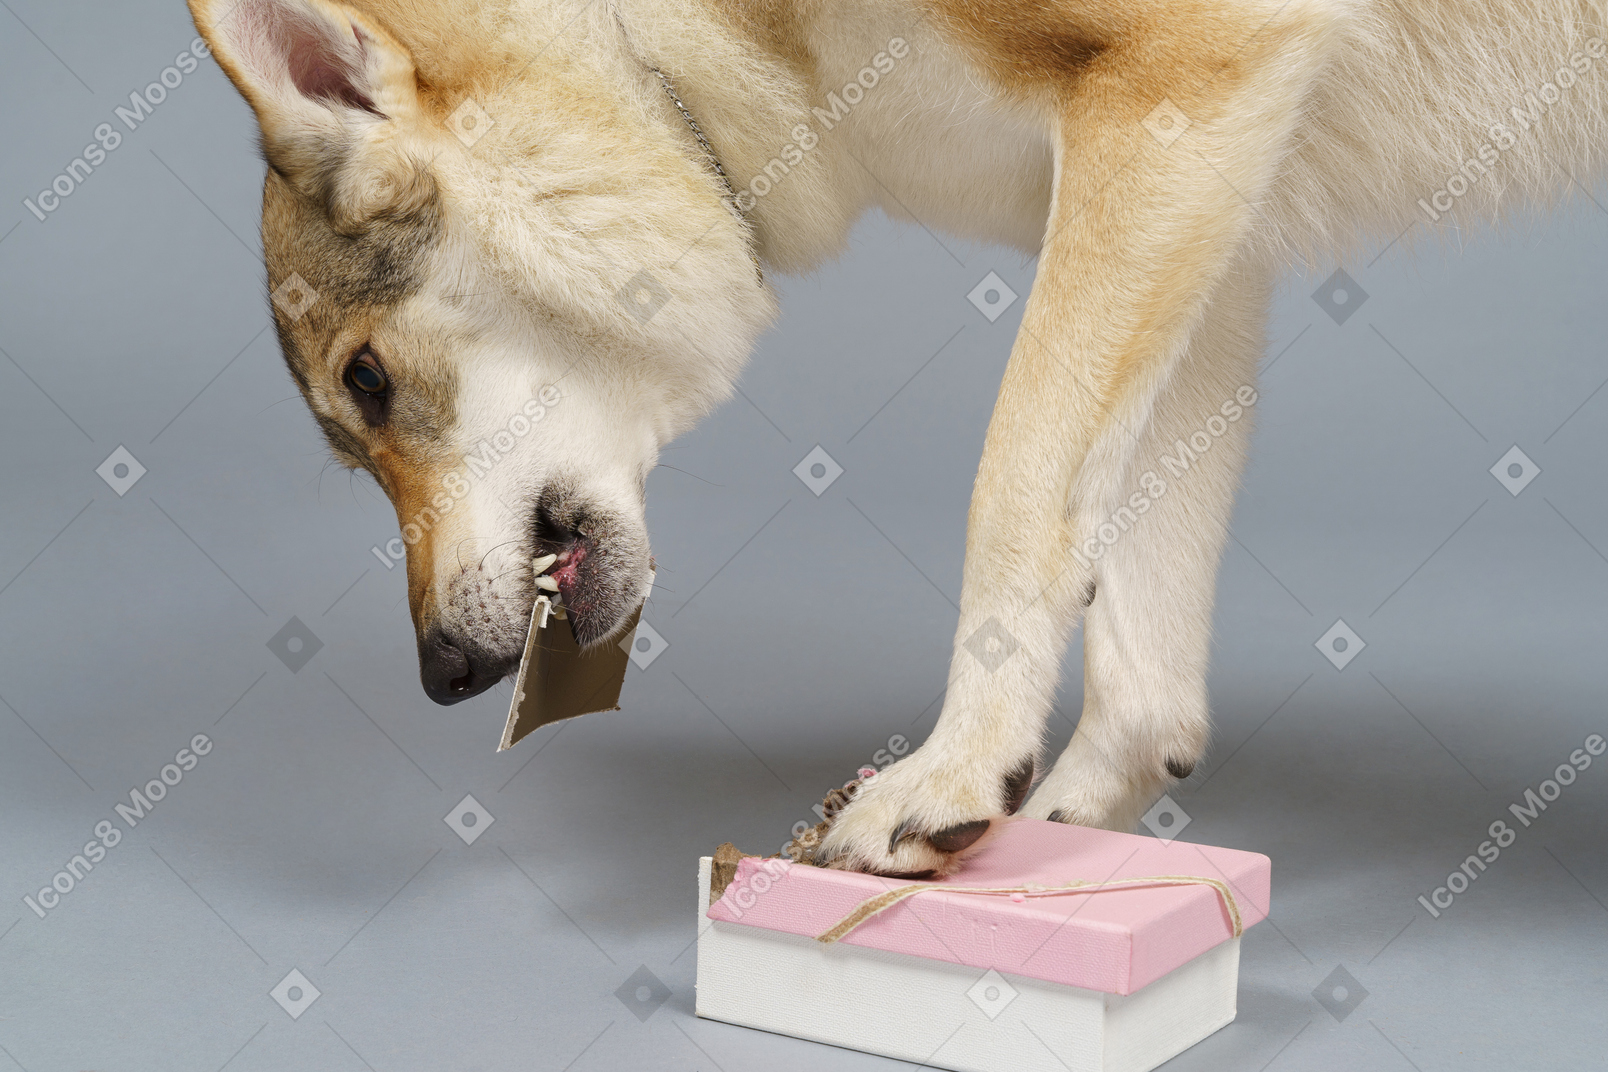 상자에서 뭔가를 검색하는 늑대와 같은 강아지의 근접